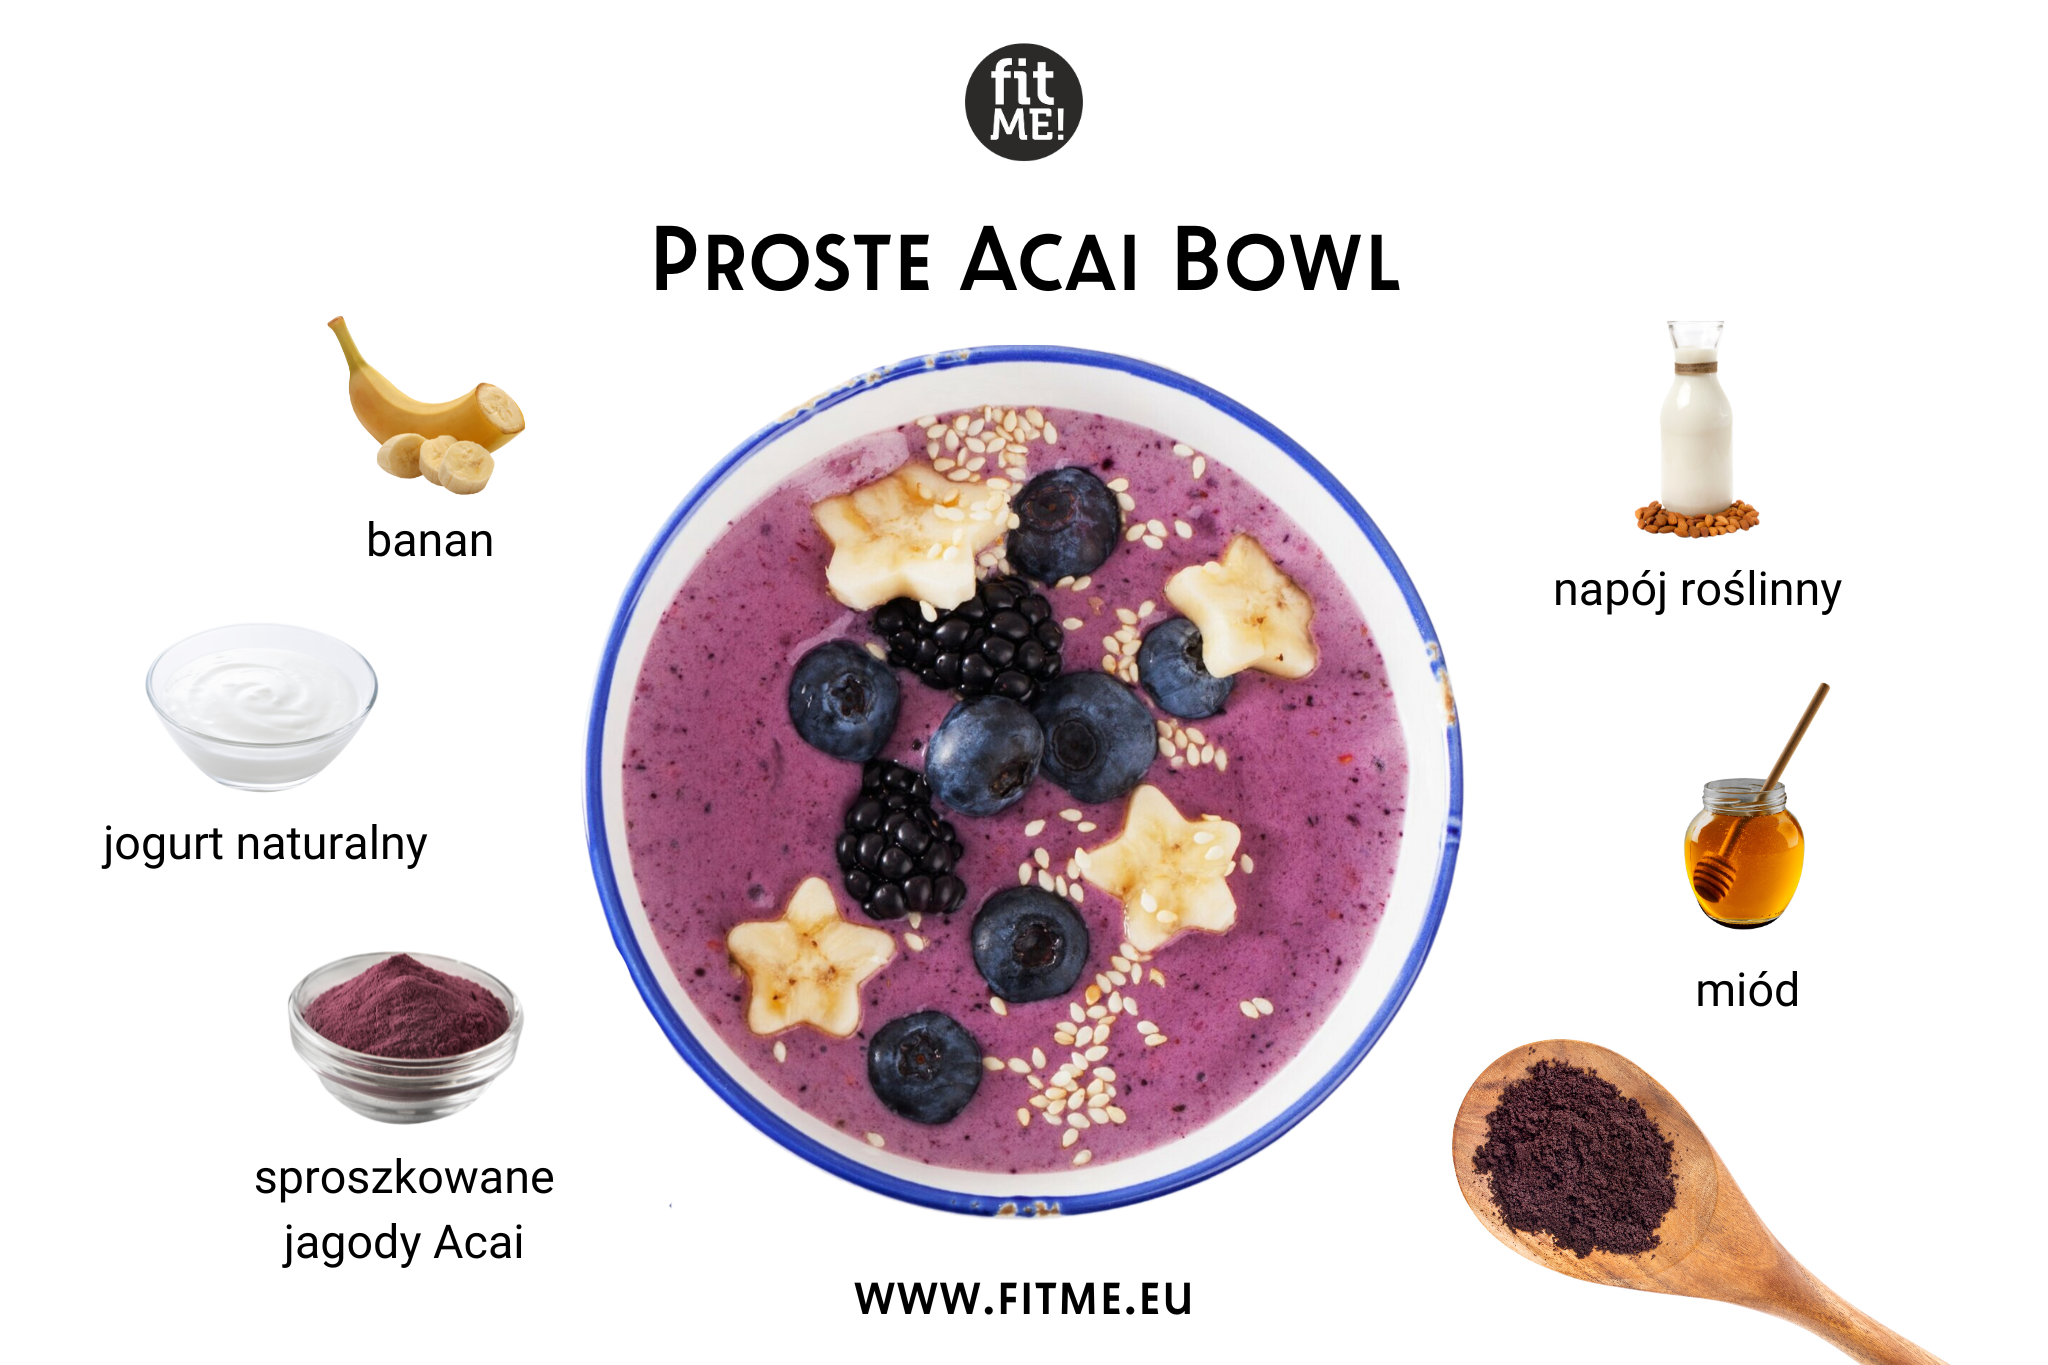 Prosta Acai Bowl to szybki i smaczny sposób na dostarczenie organizmowi wartościowych składników odżywczych. Głównym składnikiem tego zdrowego dania jest sproszkowane Acai, które dostarcza obfitość antyoksydantów wspierających odporność i ogólny stan zdrowia. Dwa pełne łyżki tego superfoodu łączą się z jednym świeżym bananem, nadając potrawie kremową konsystencję i naturalną słodycz.